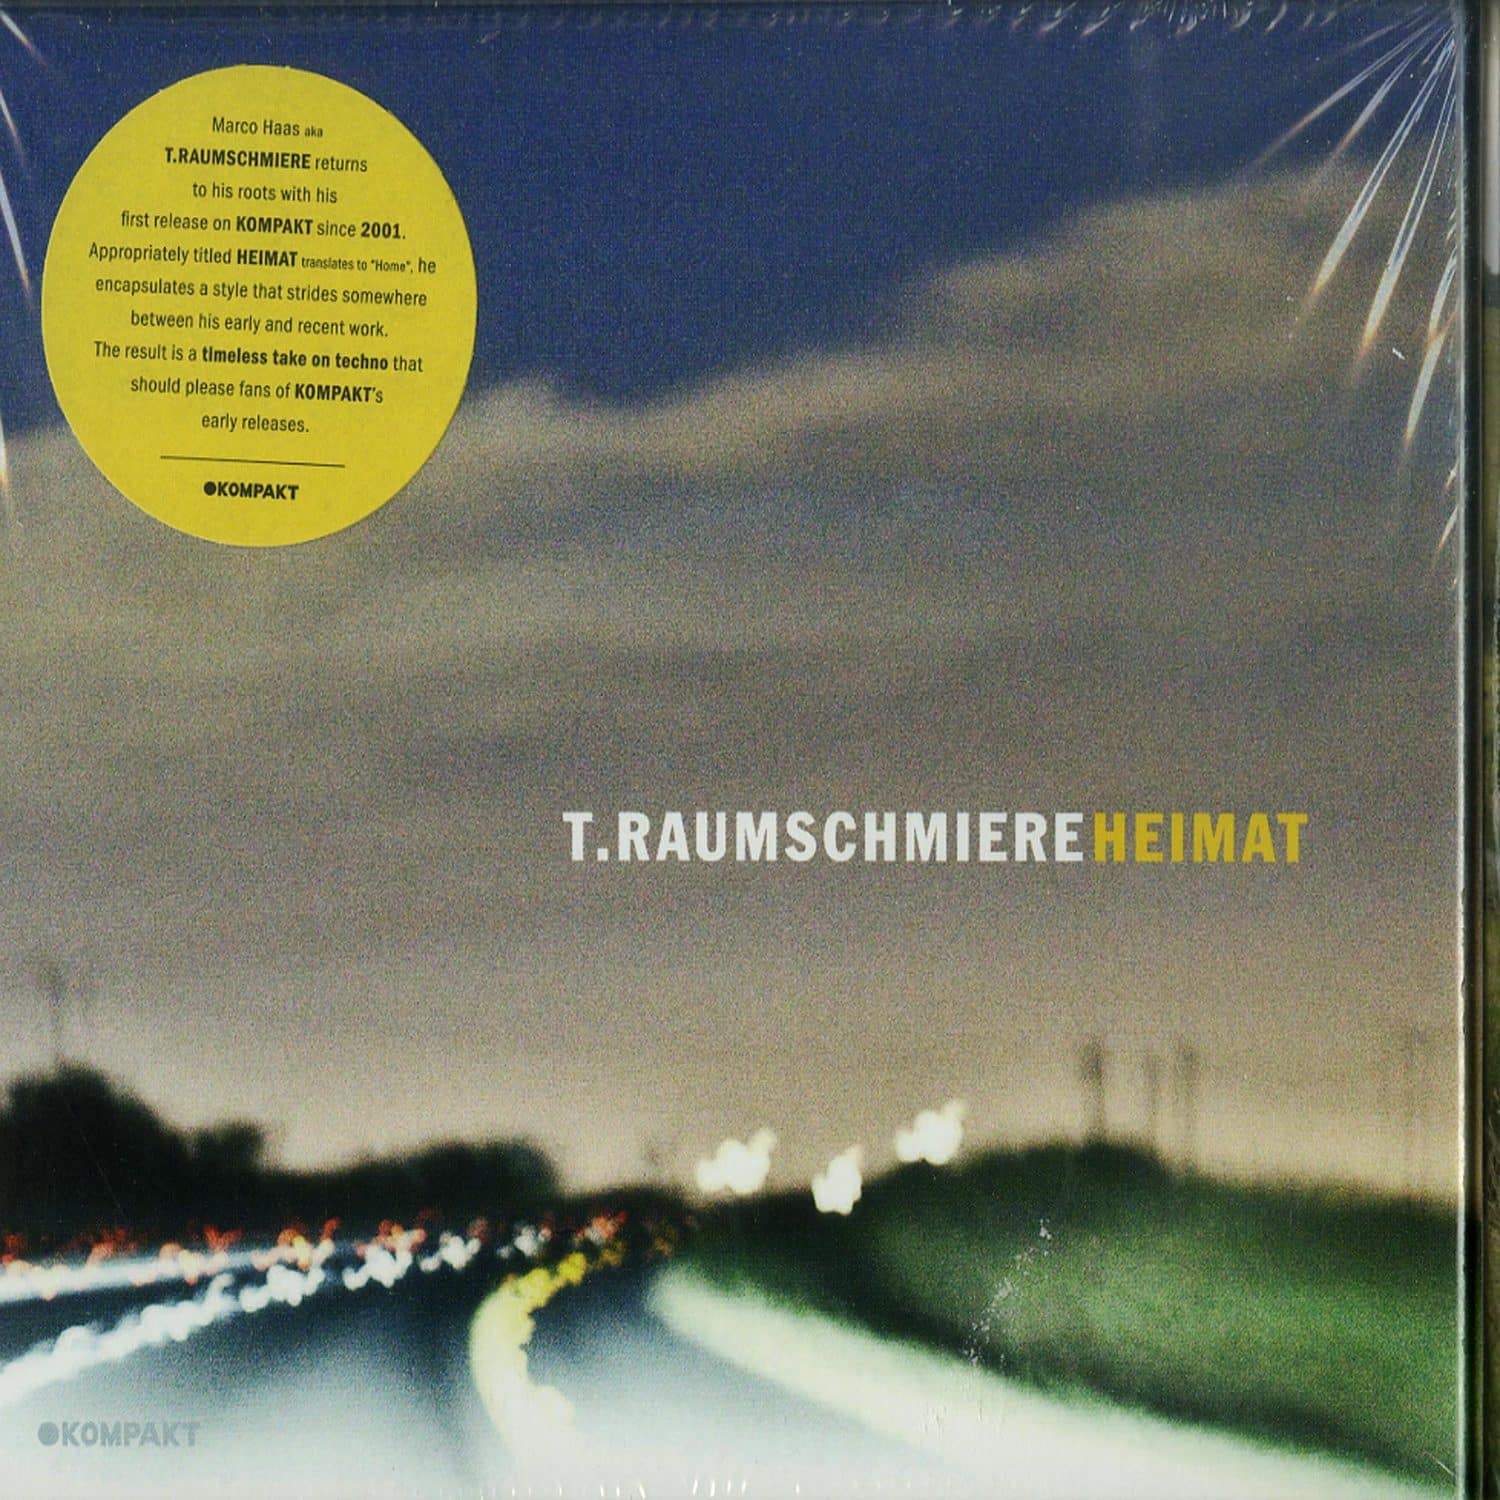 TRaumschmiere - HEIMAT 